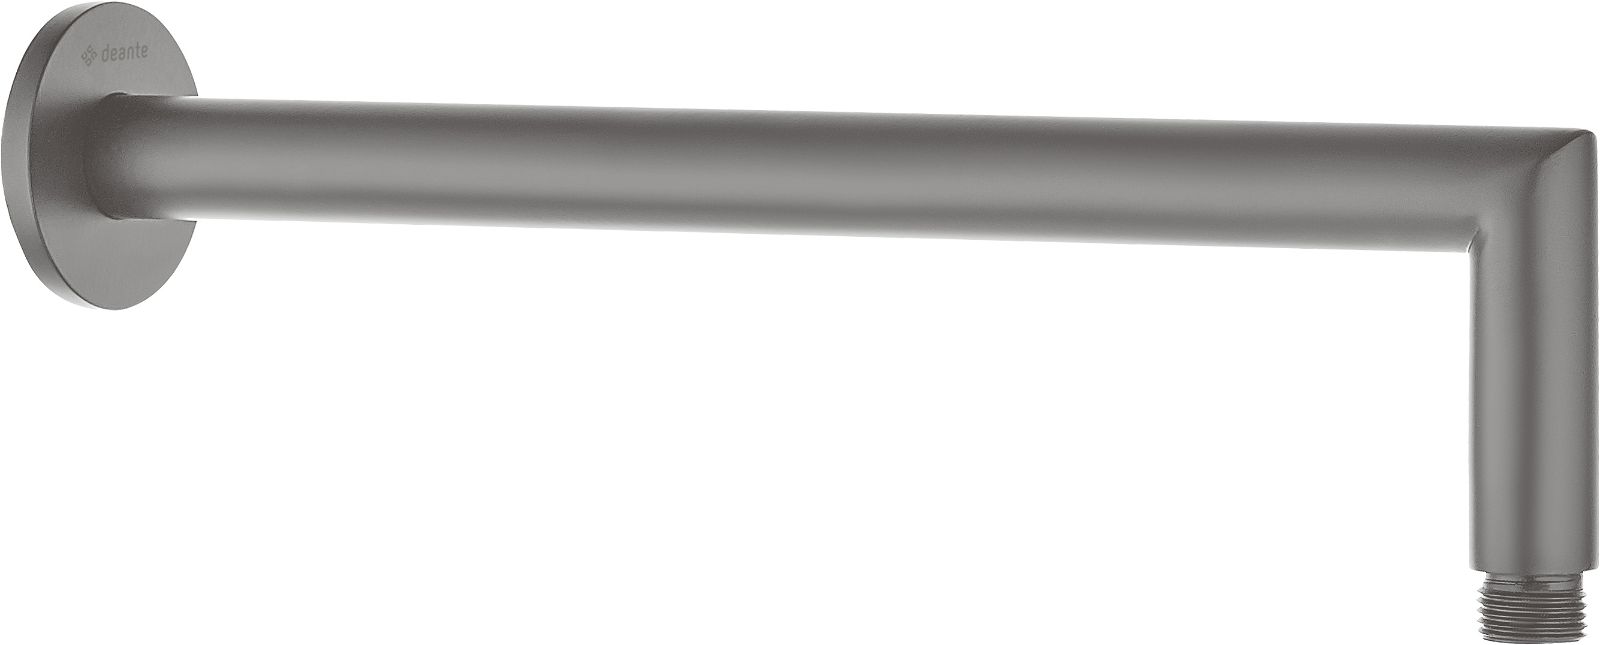 Shower spout, wall-mounted - 400 mm - NAC_D45K - Główne zdjęcie produktowe